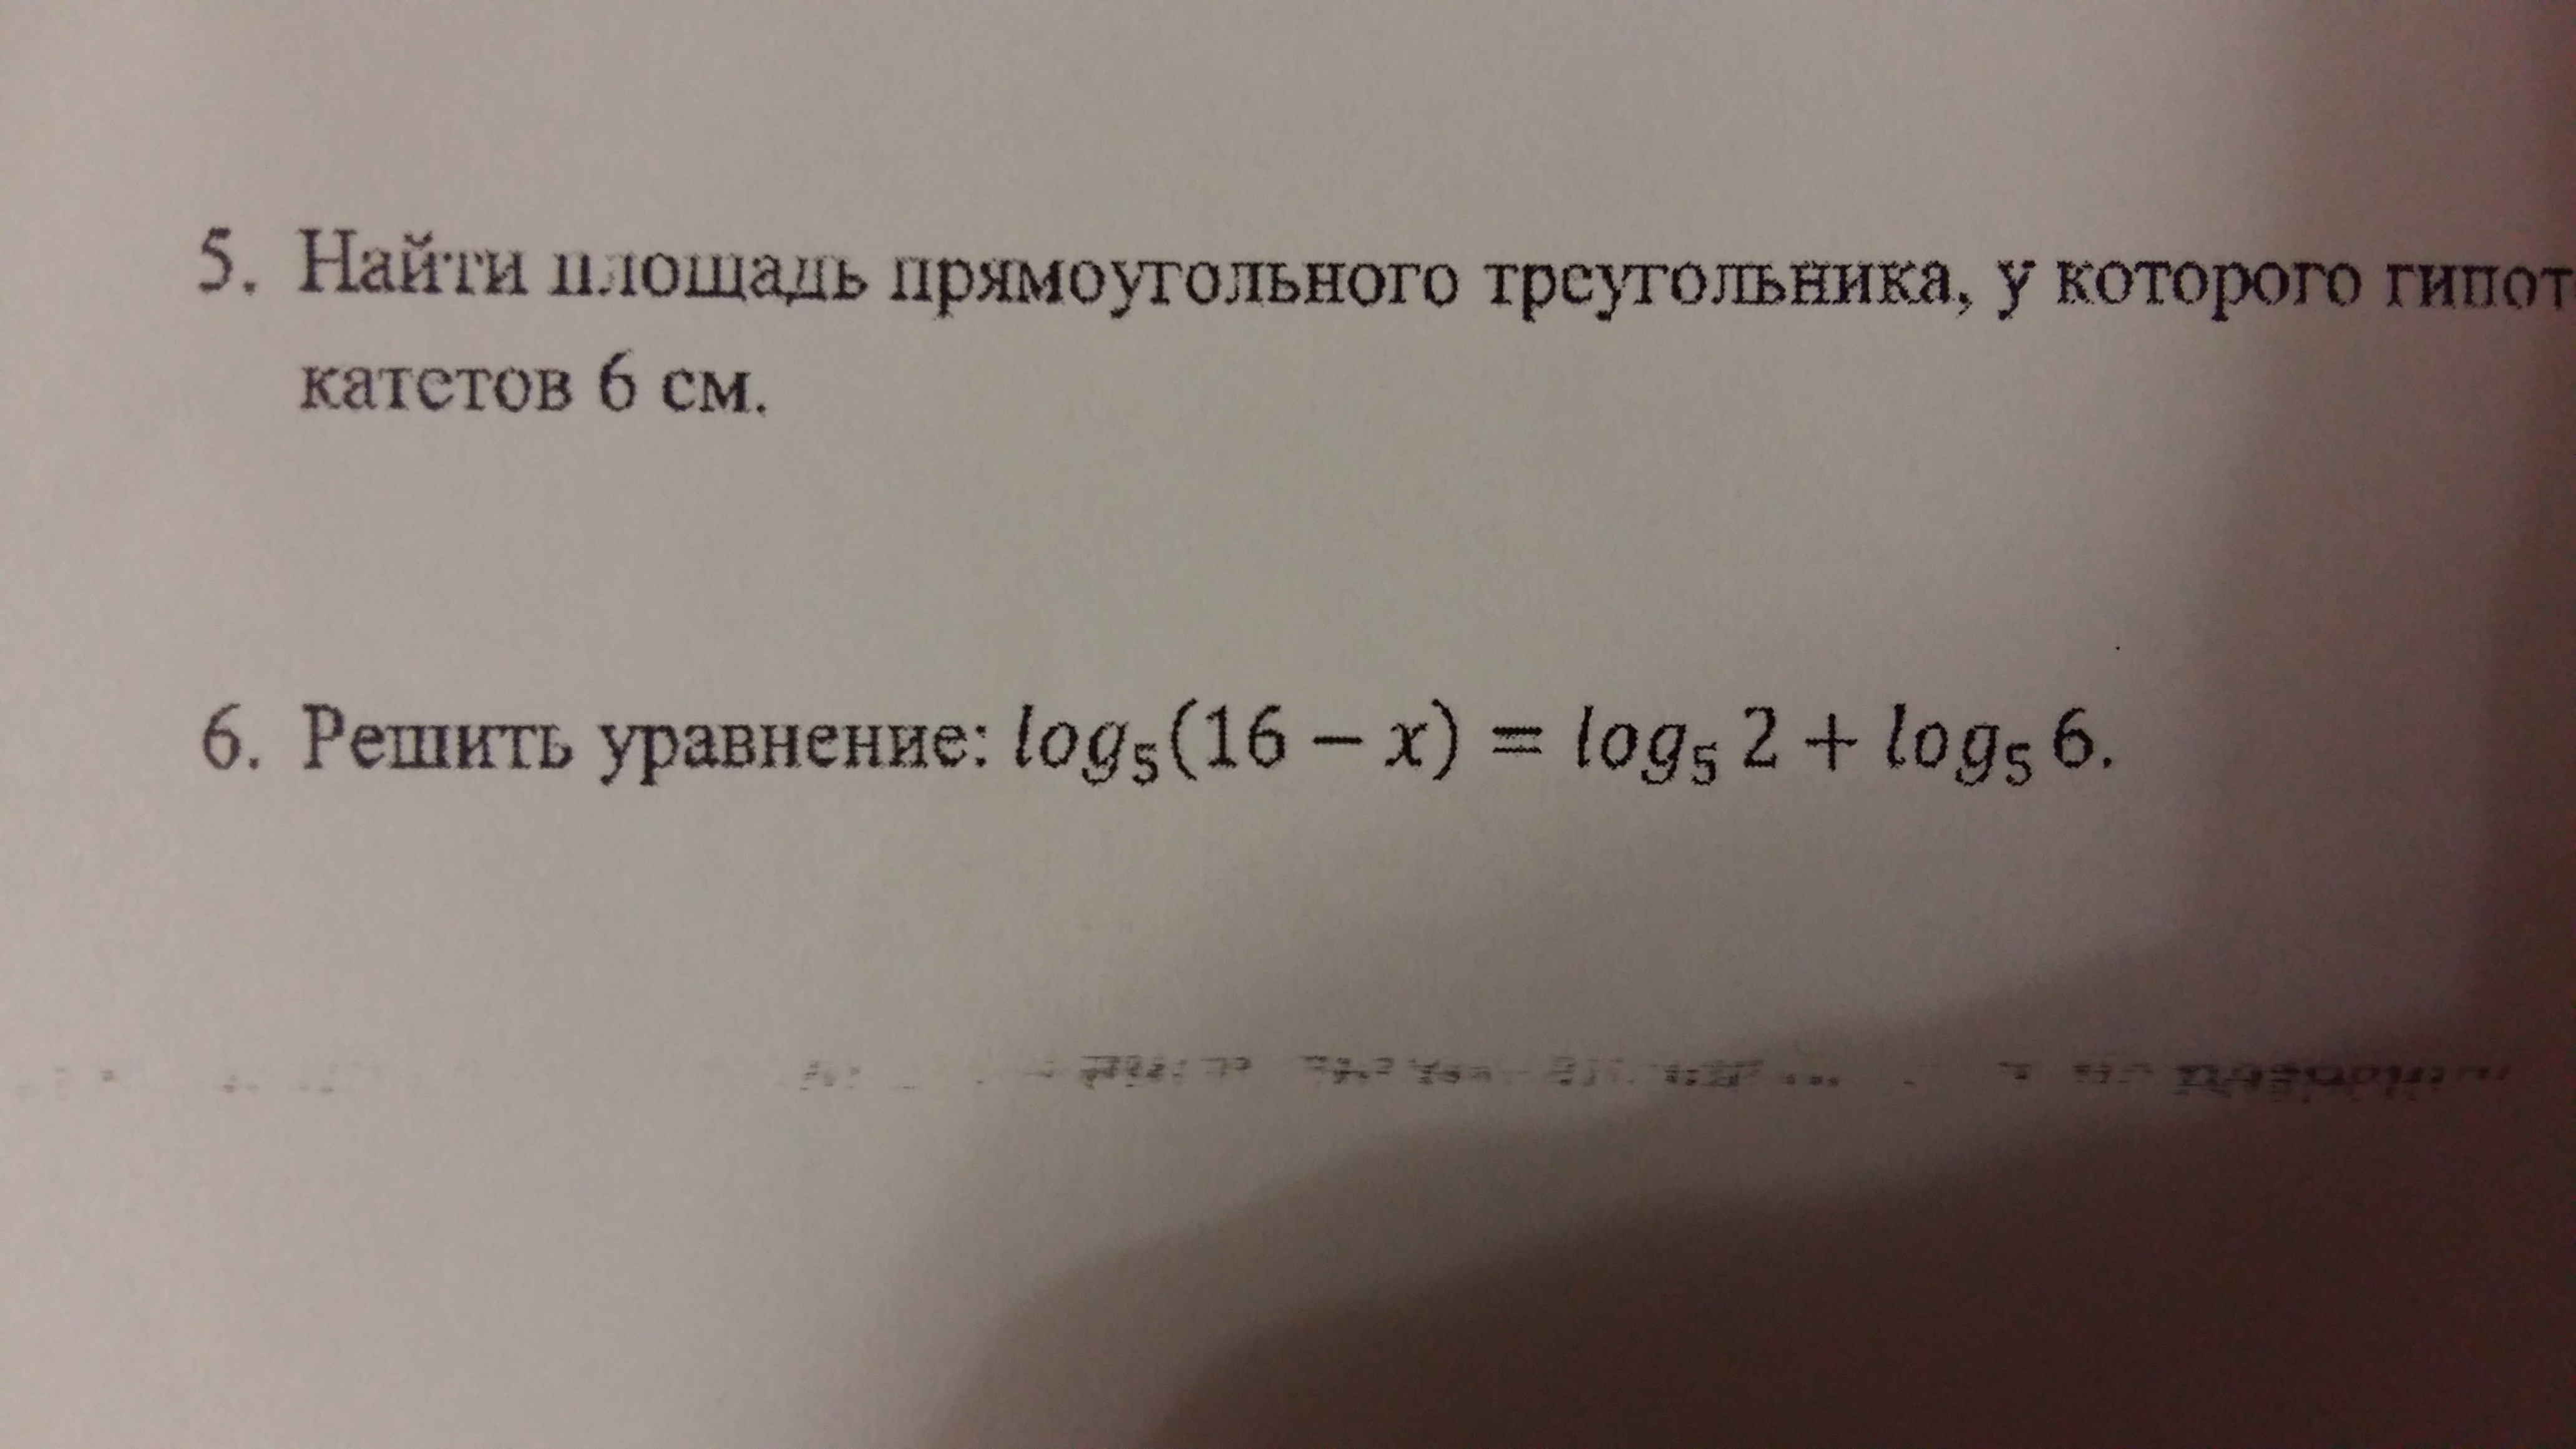 Решить уравнение : log 5 (16 - x) = log 5 2 + log 5 6?